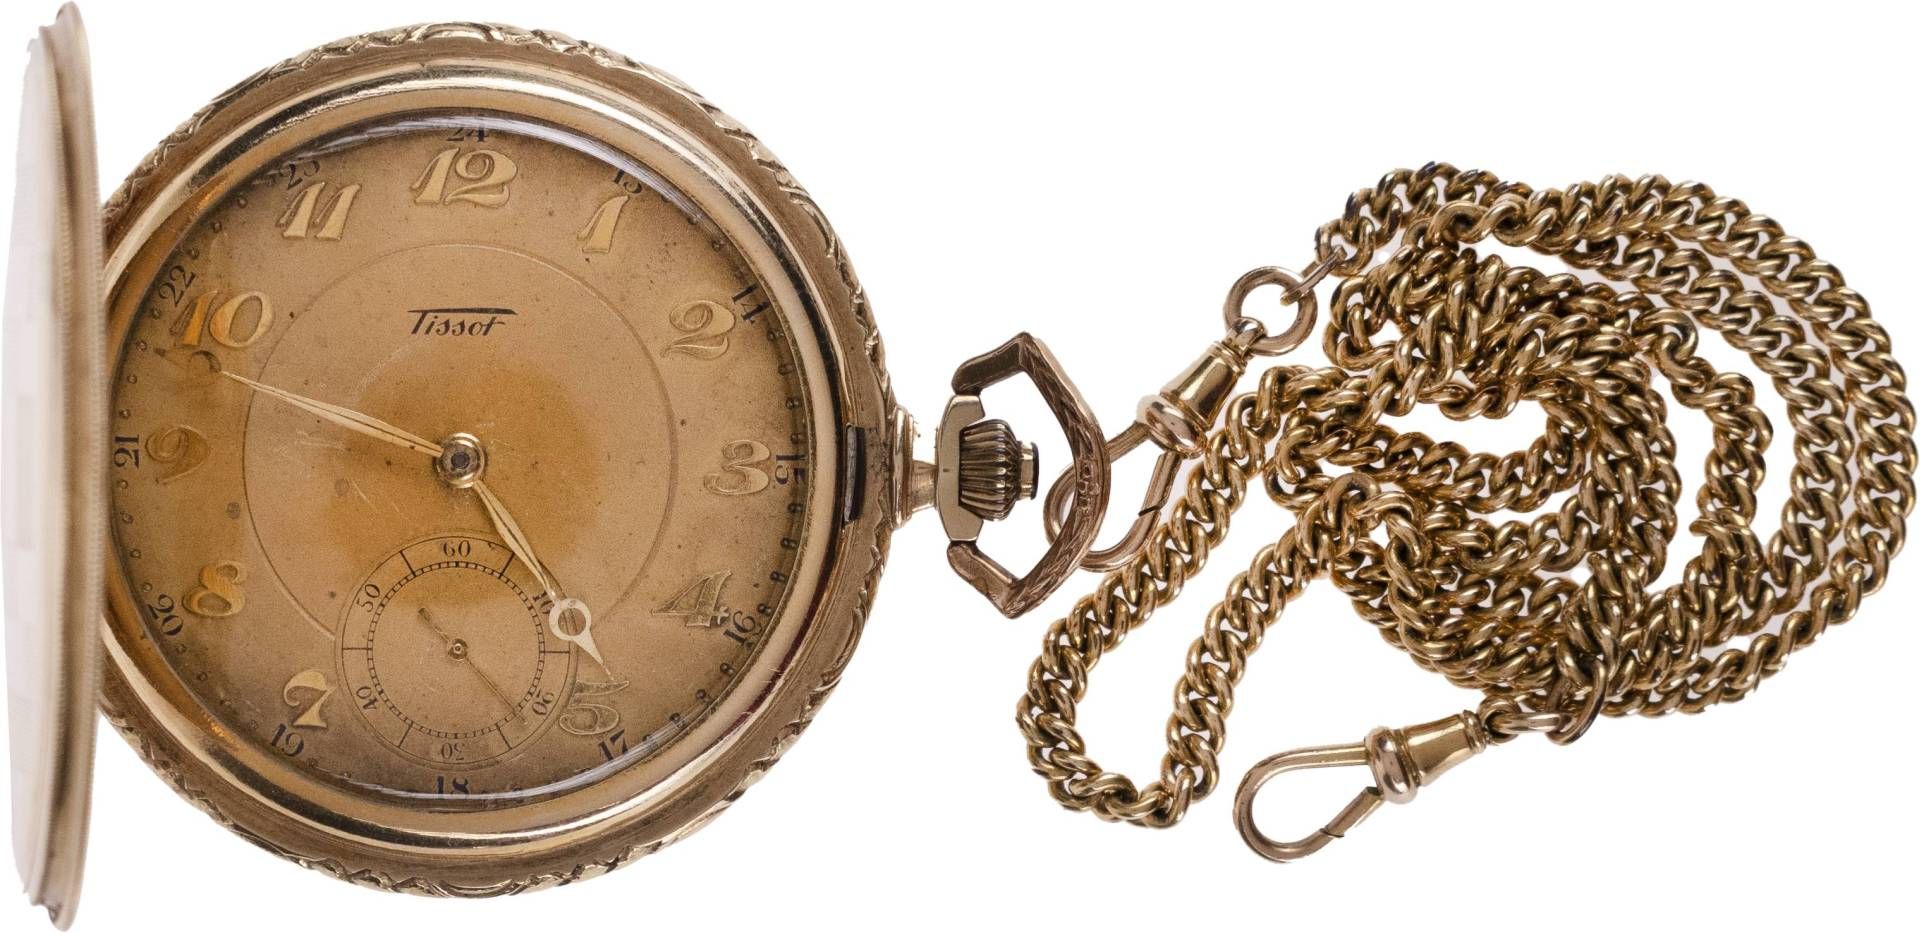 Tissot Locle Taschenuhr. Ca. 51mm, 585er Gold, Handaufzug. Champgnerfarbenes Ziffernblatt mit - Bild 2 aus 4